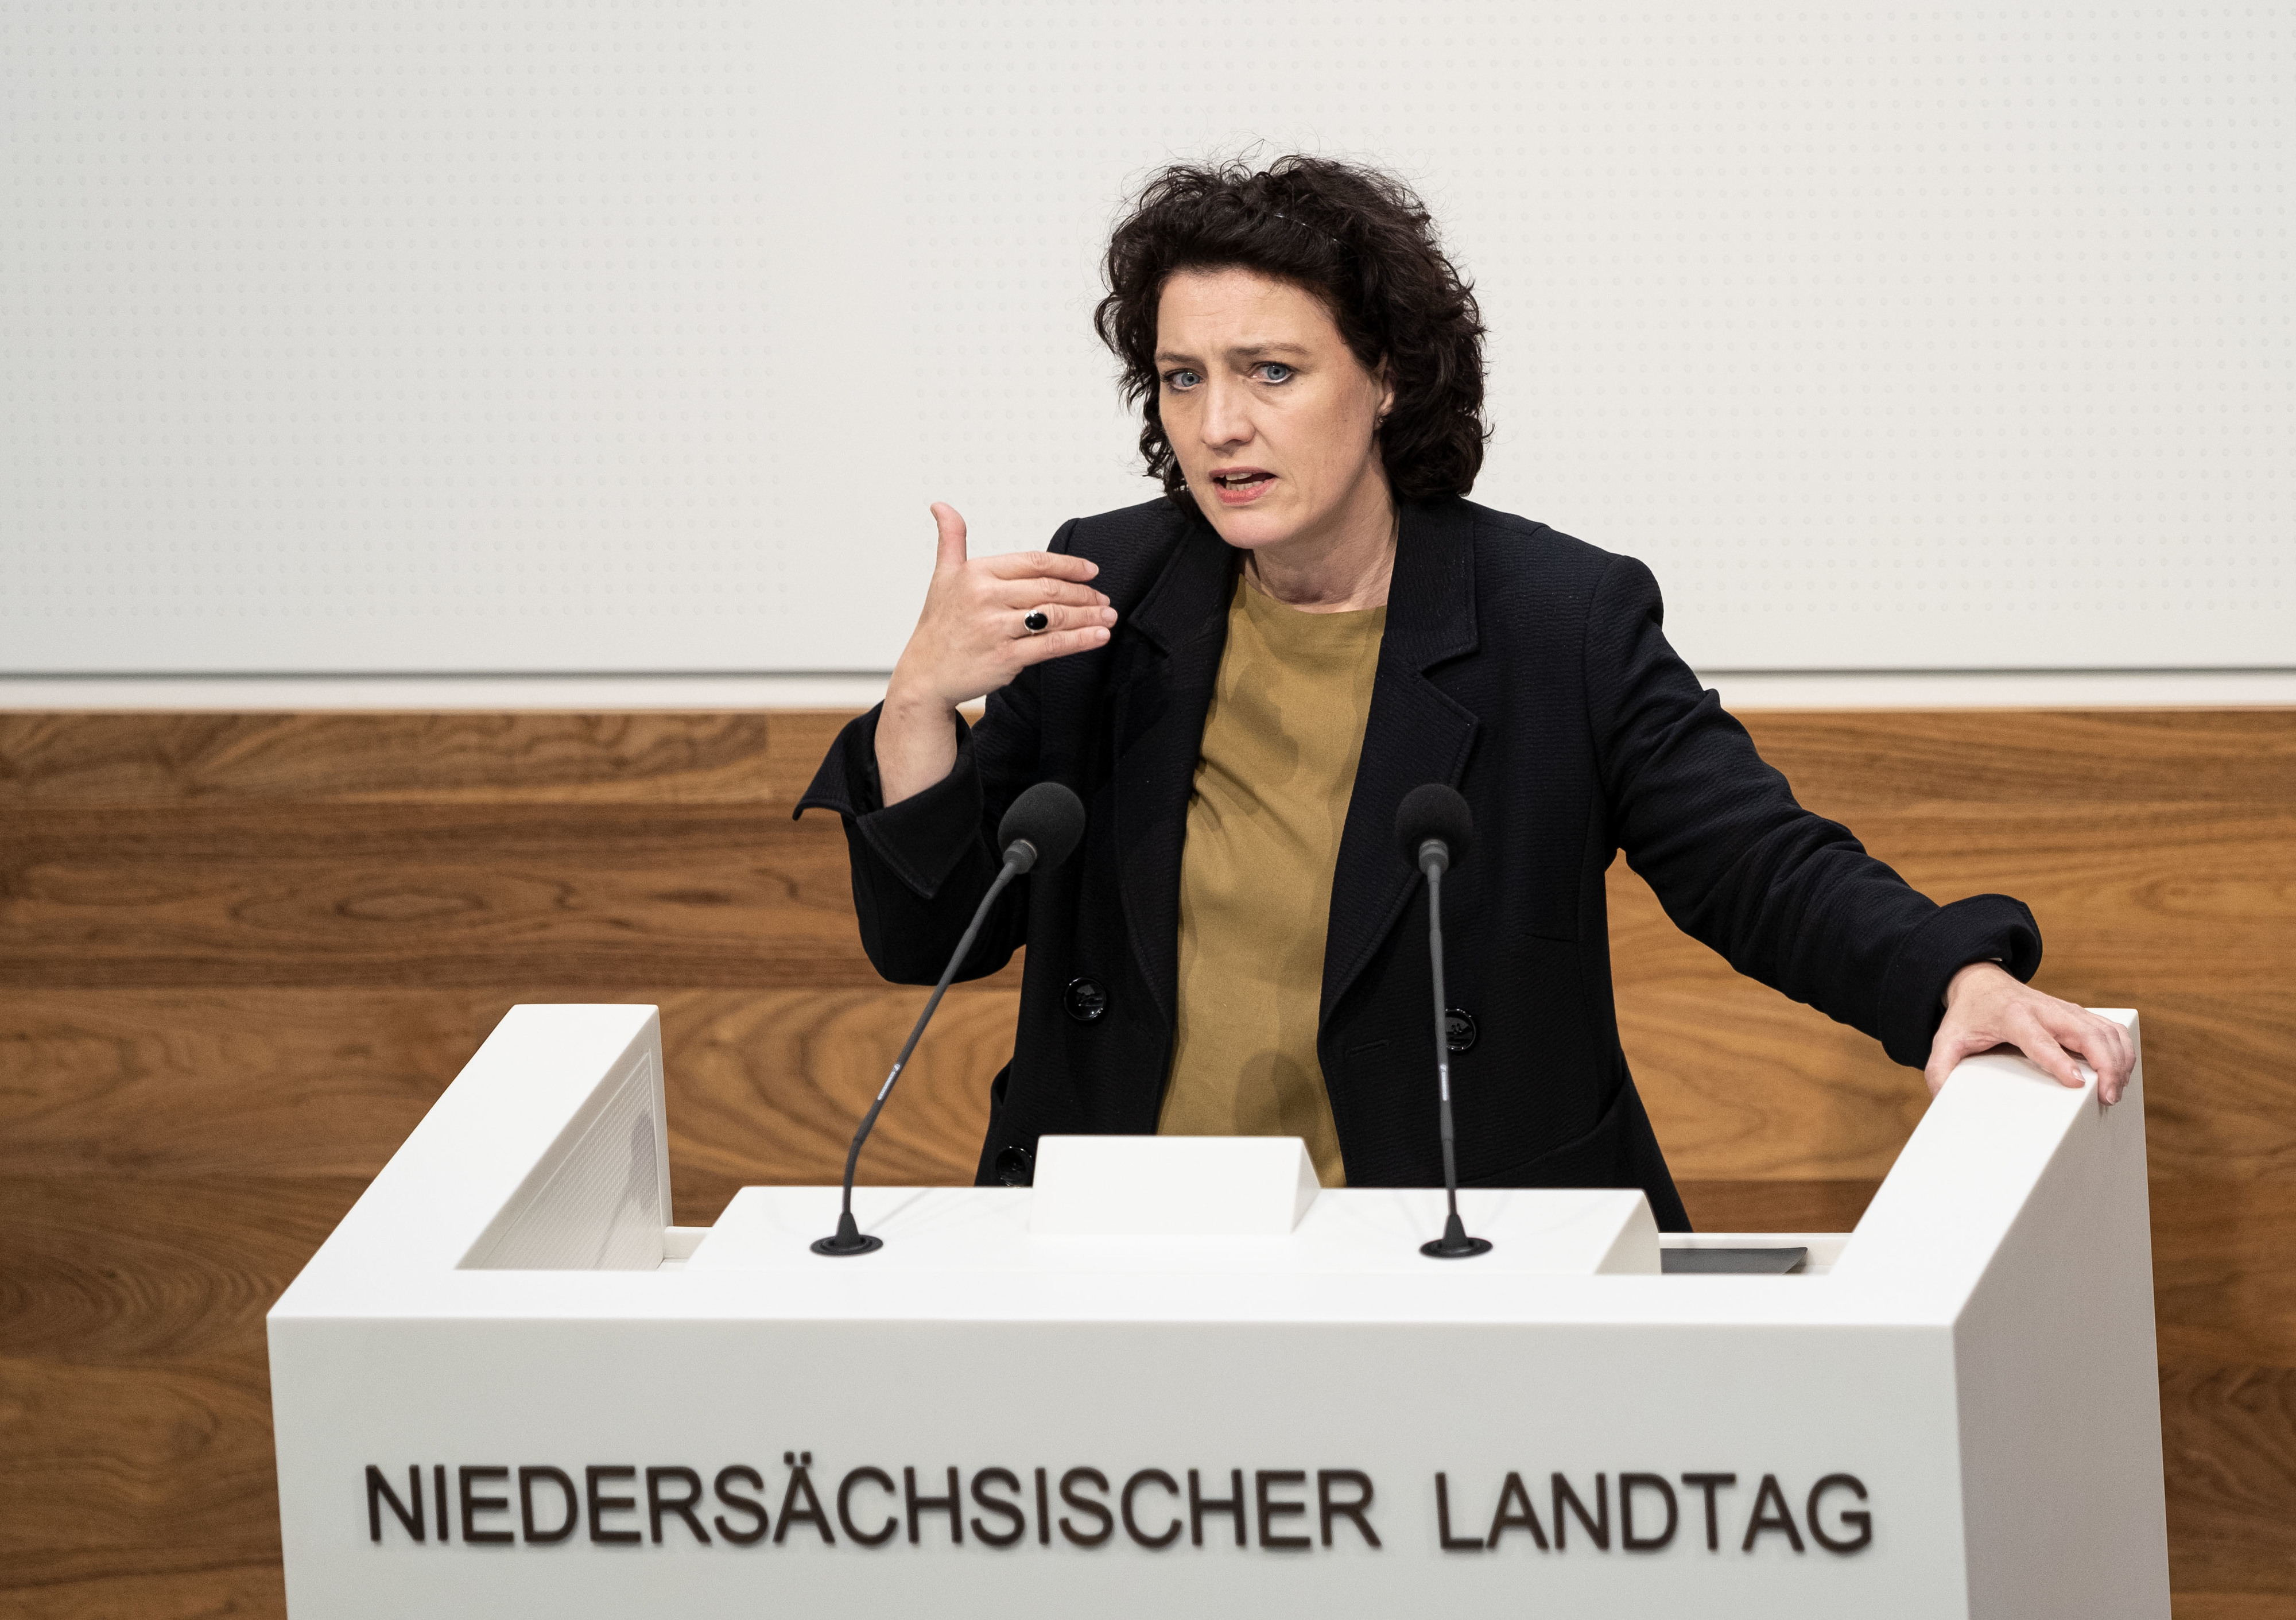 Mehrfache Tests brächten keine zusätzliche Sicherheit, sagte Carola Reimann am Freitag in Hannover. Foto: dpa/Steffen